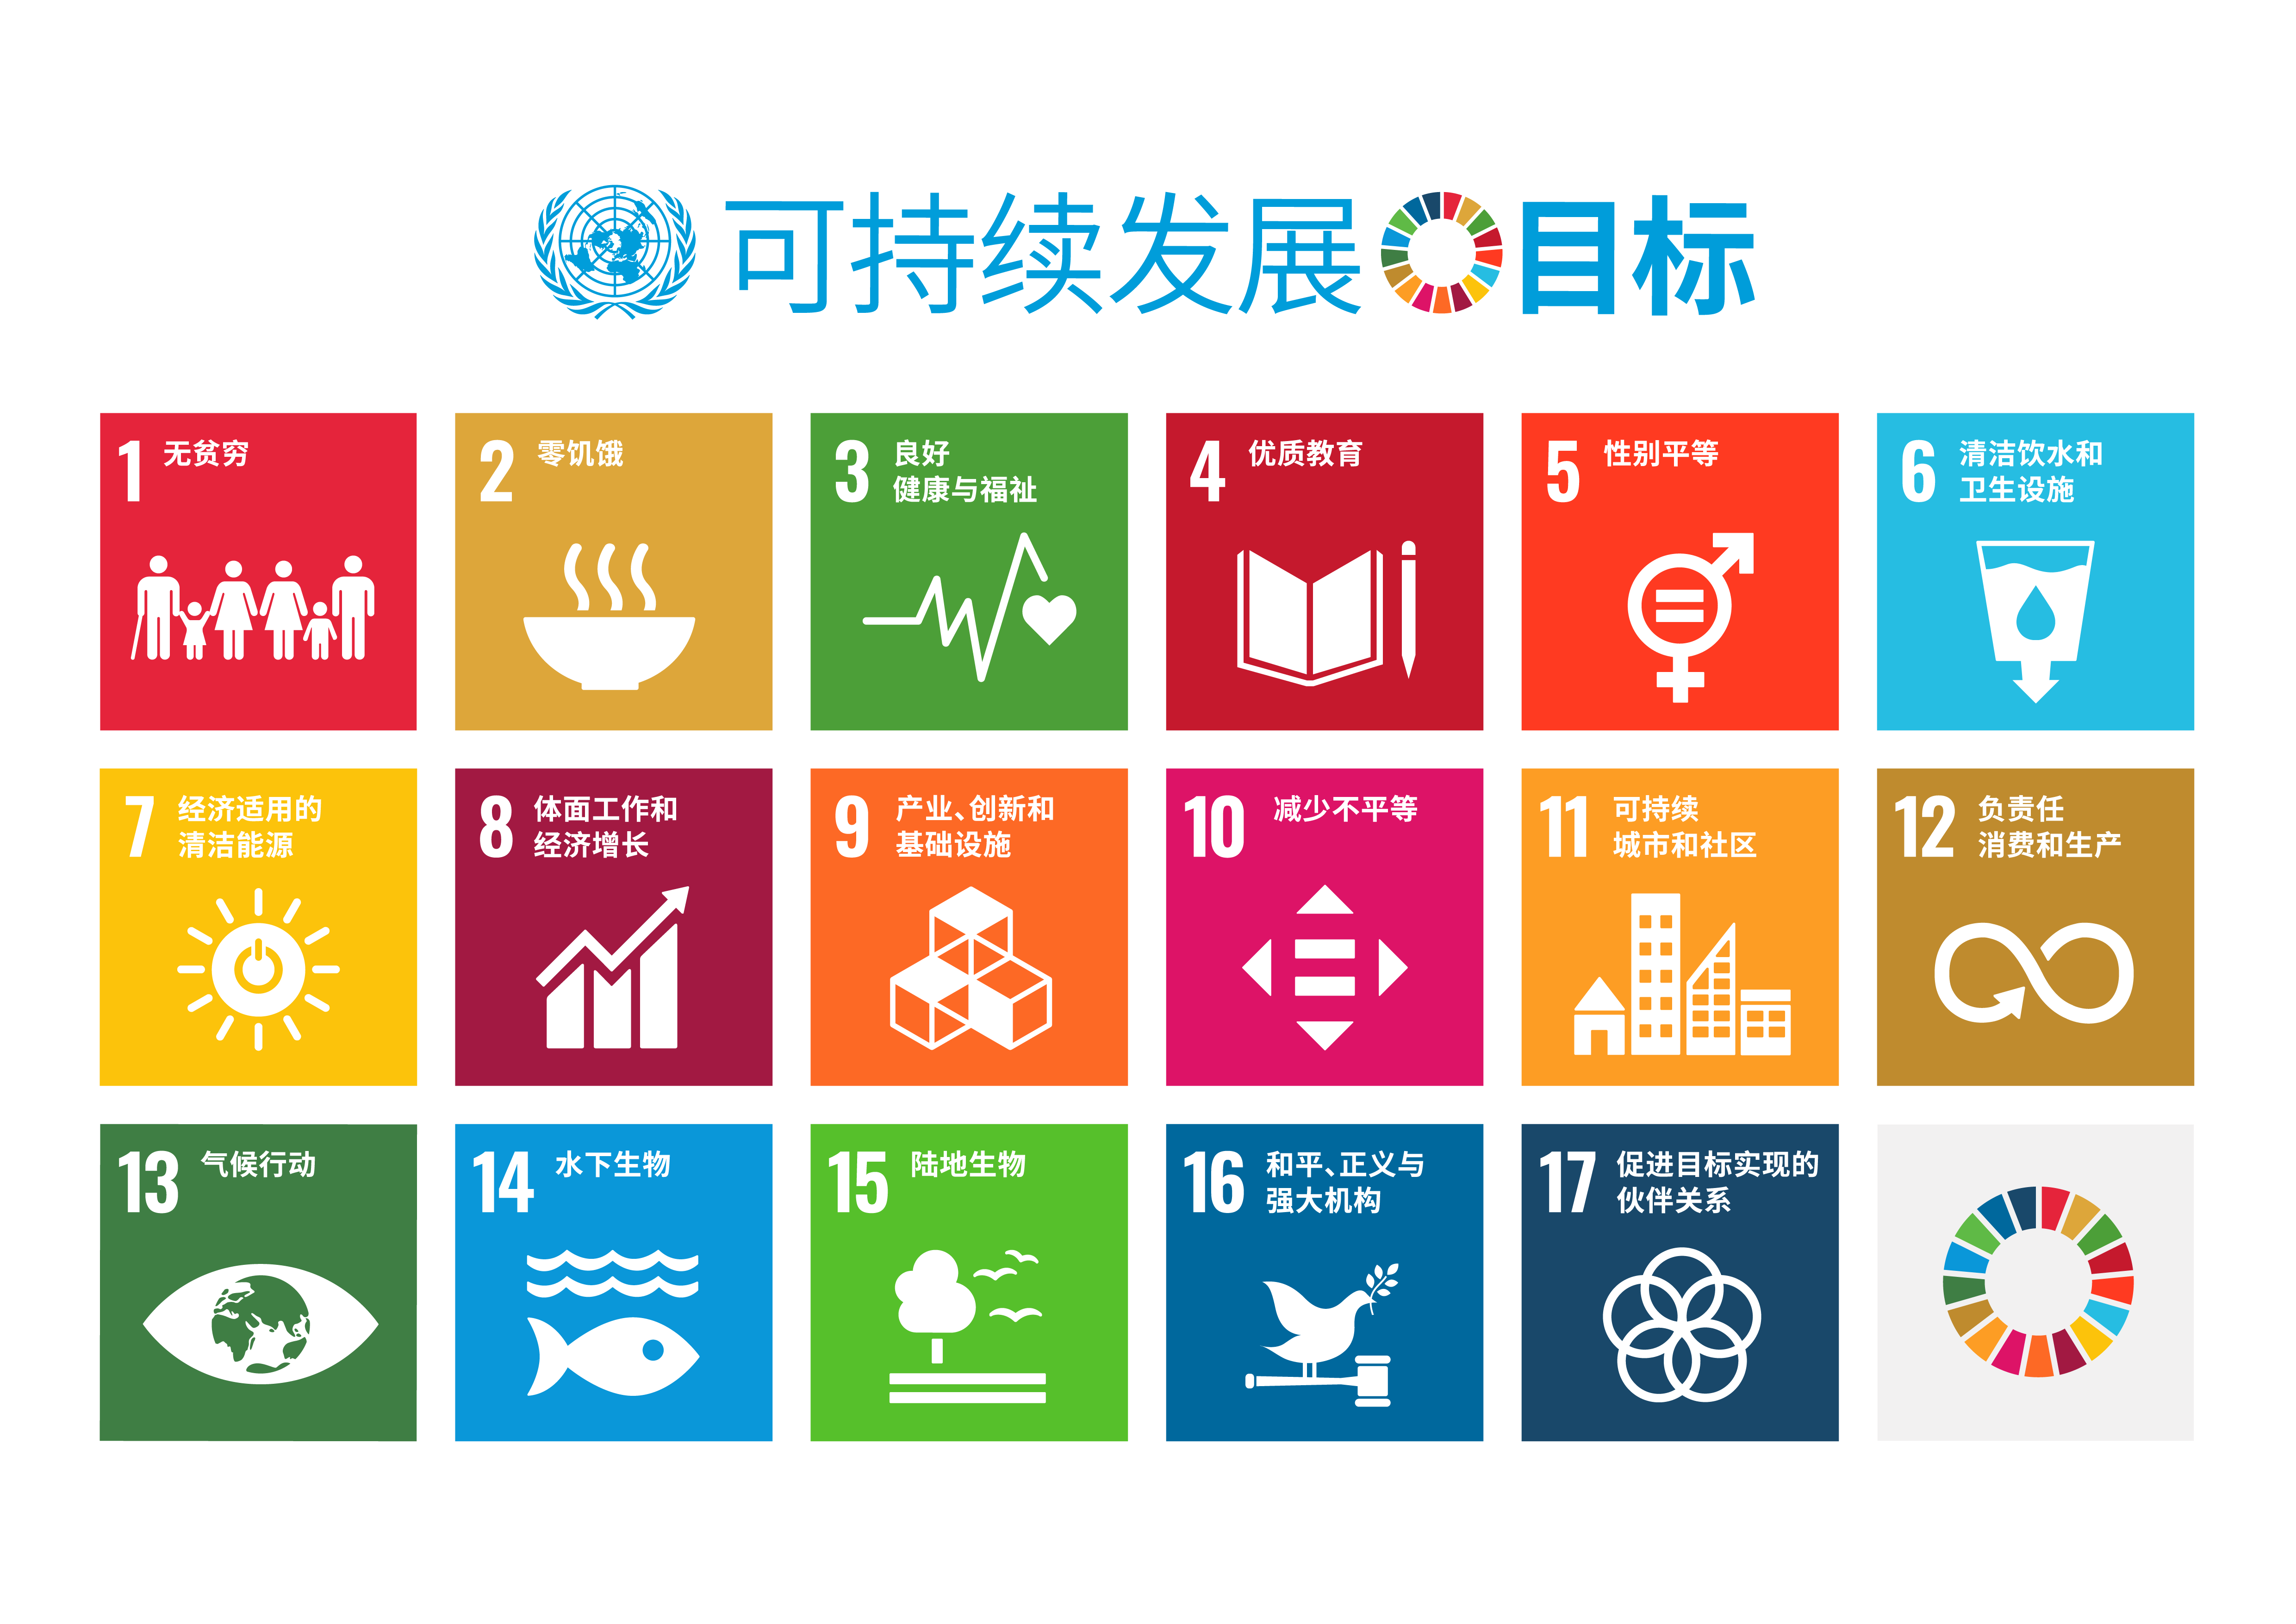  17 项可持续发展目标卡片。